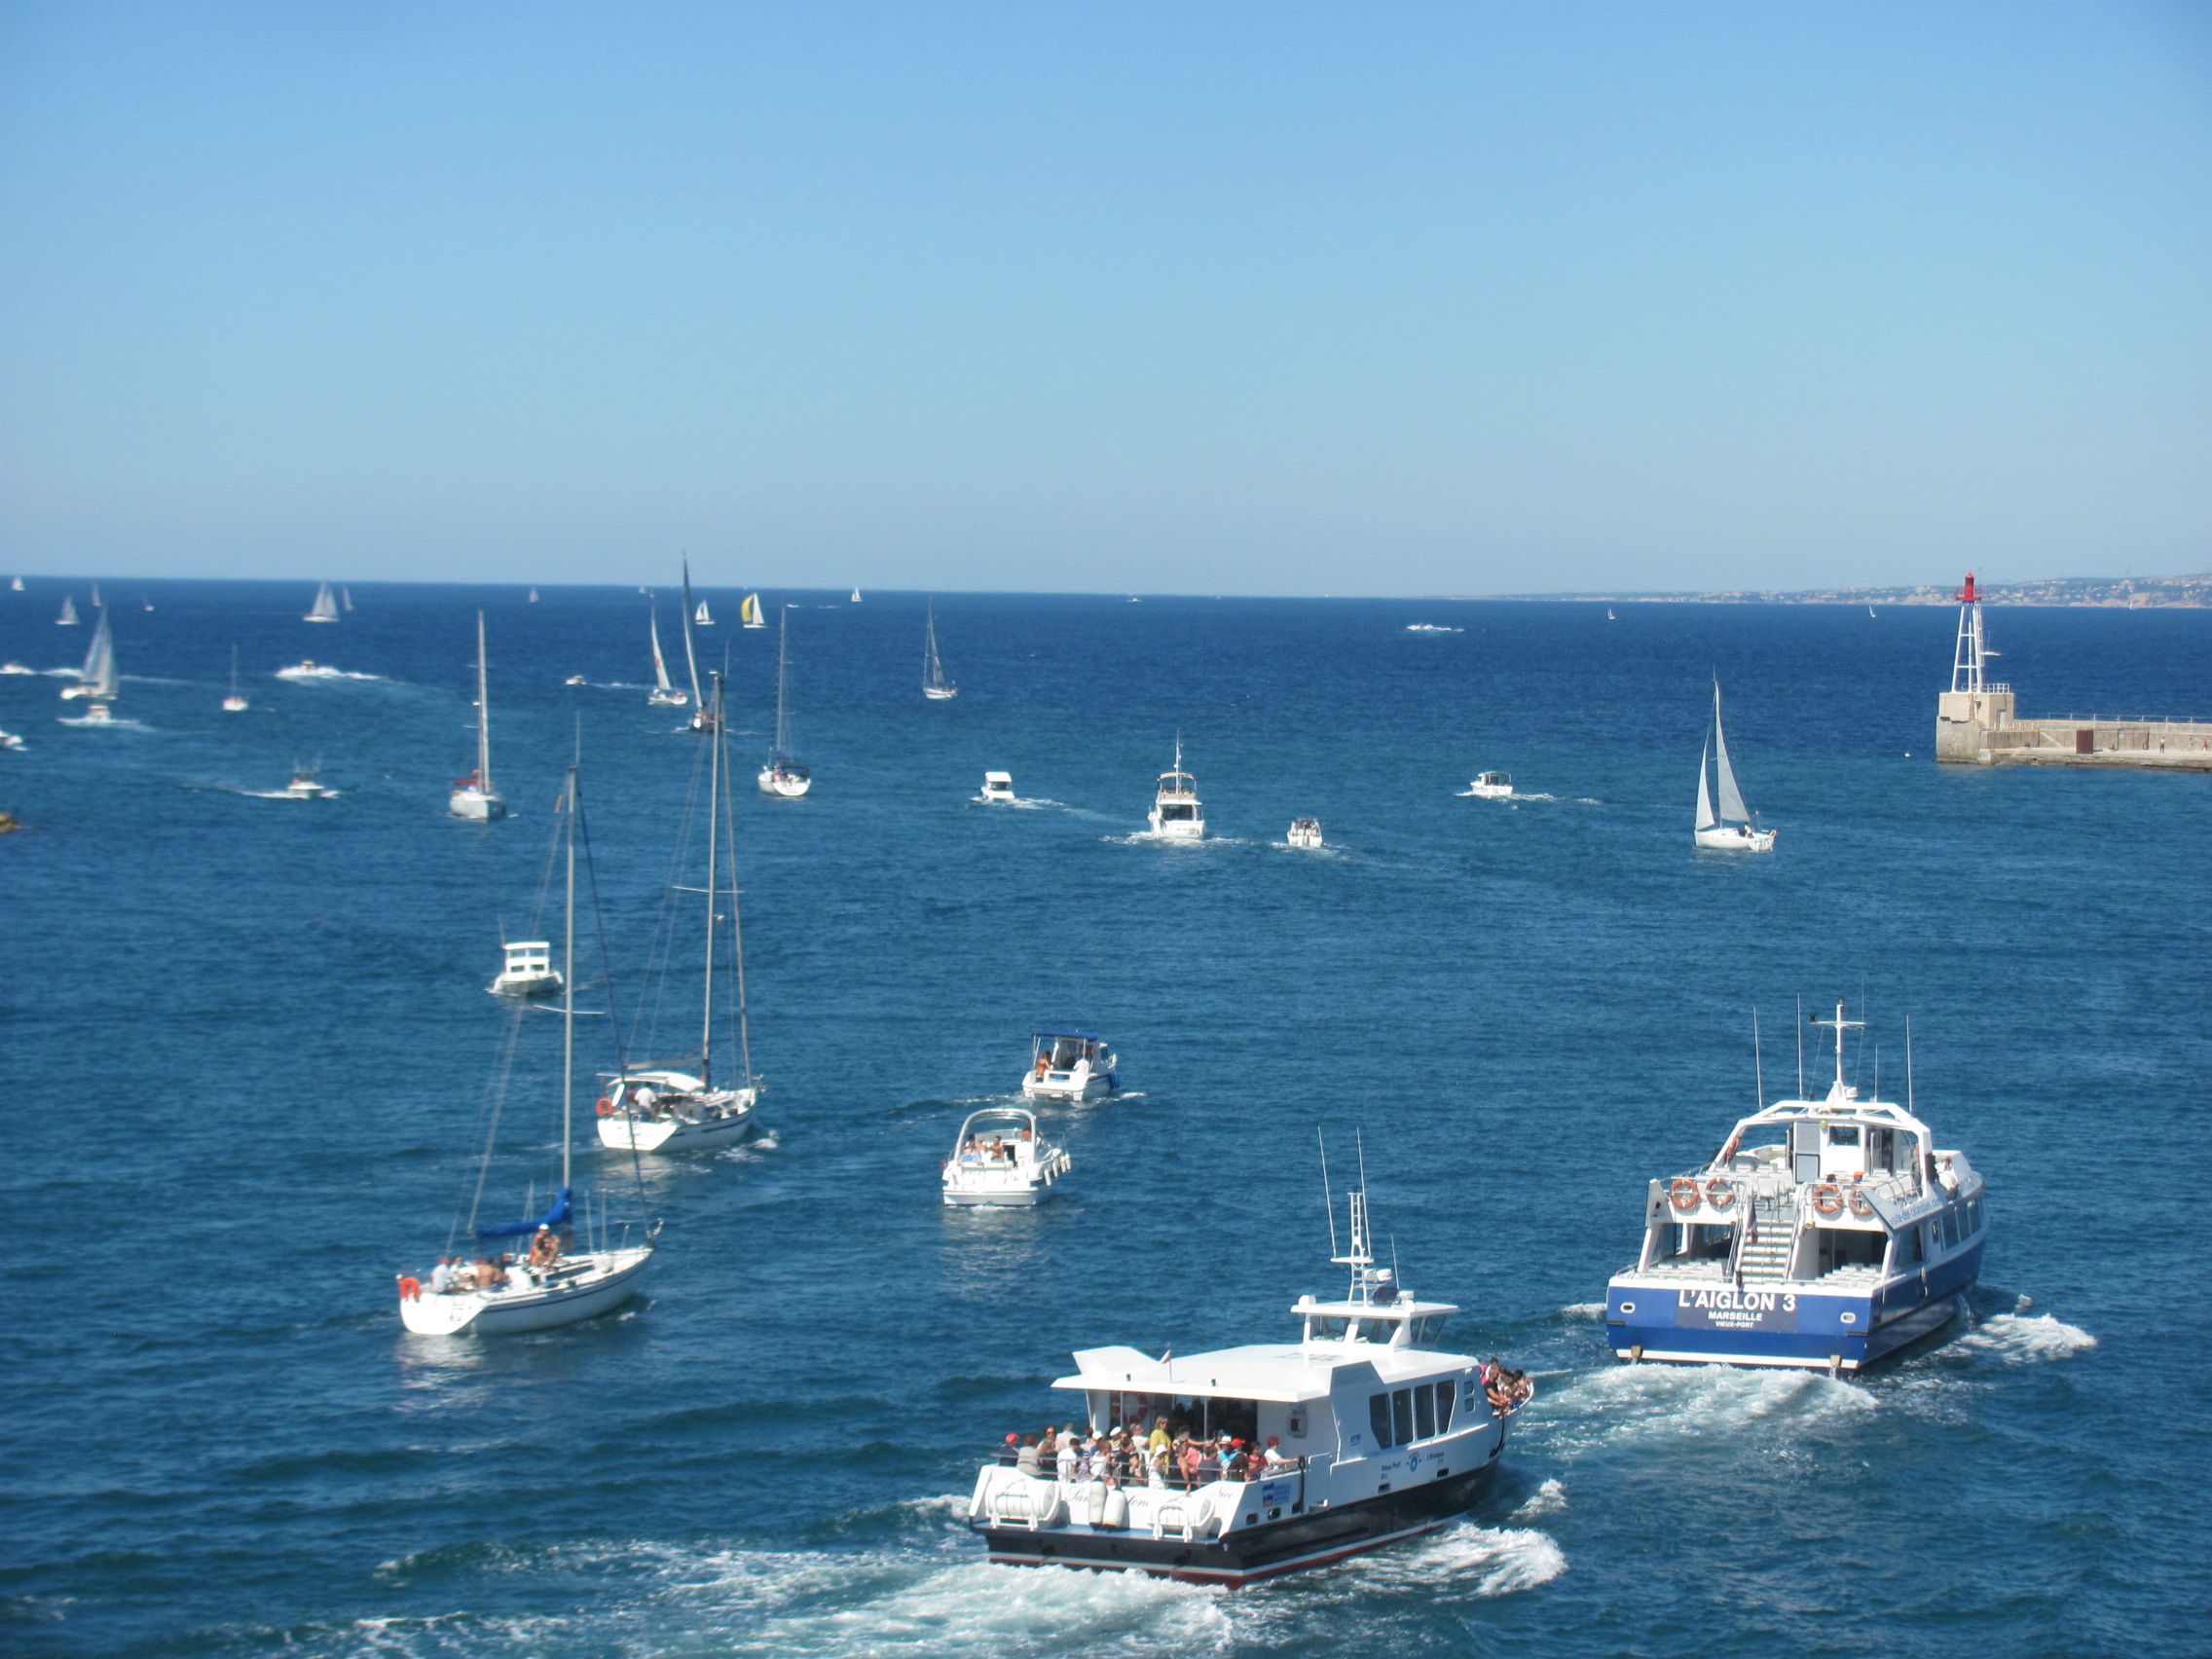 (12) Saison Estivale 2013: Embouteillage à la sortie du port de Marseille